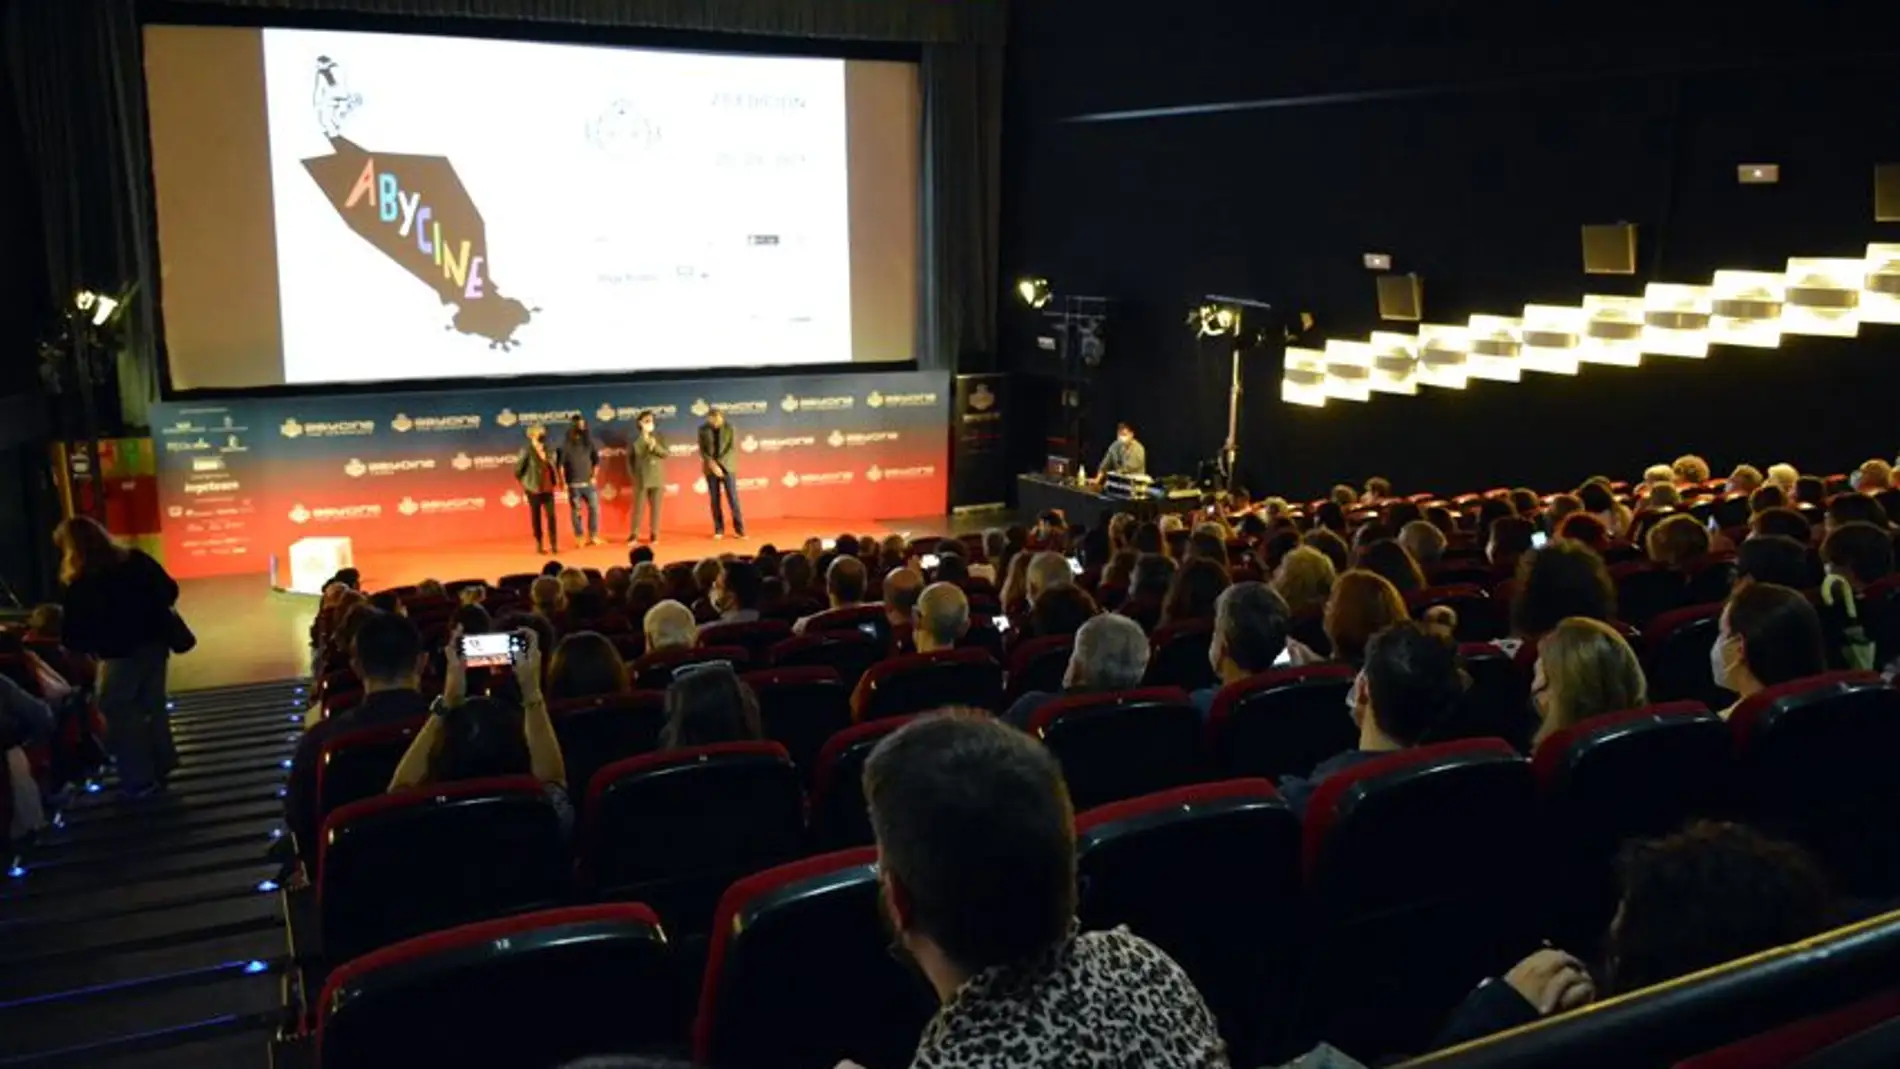  La 23ª Edición de Abycine-Cine Independiente supera los 46.000 espectadores en salas y plataformas